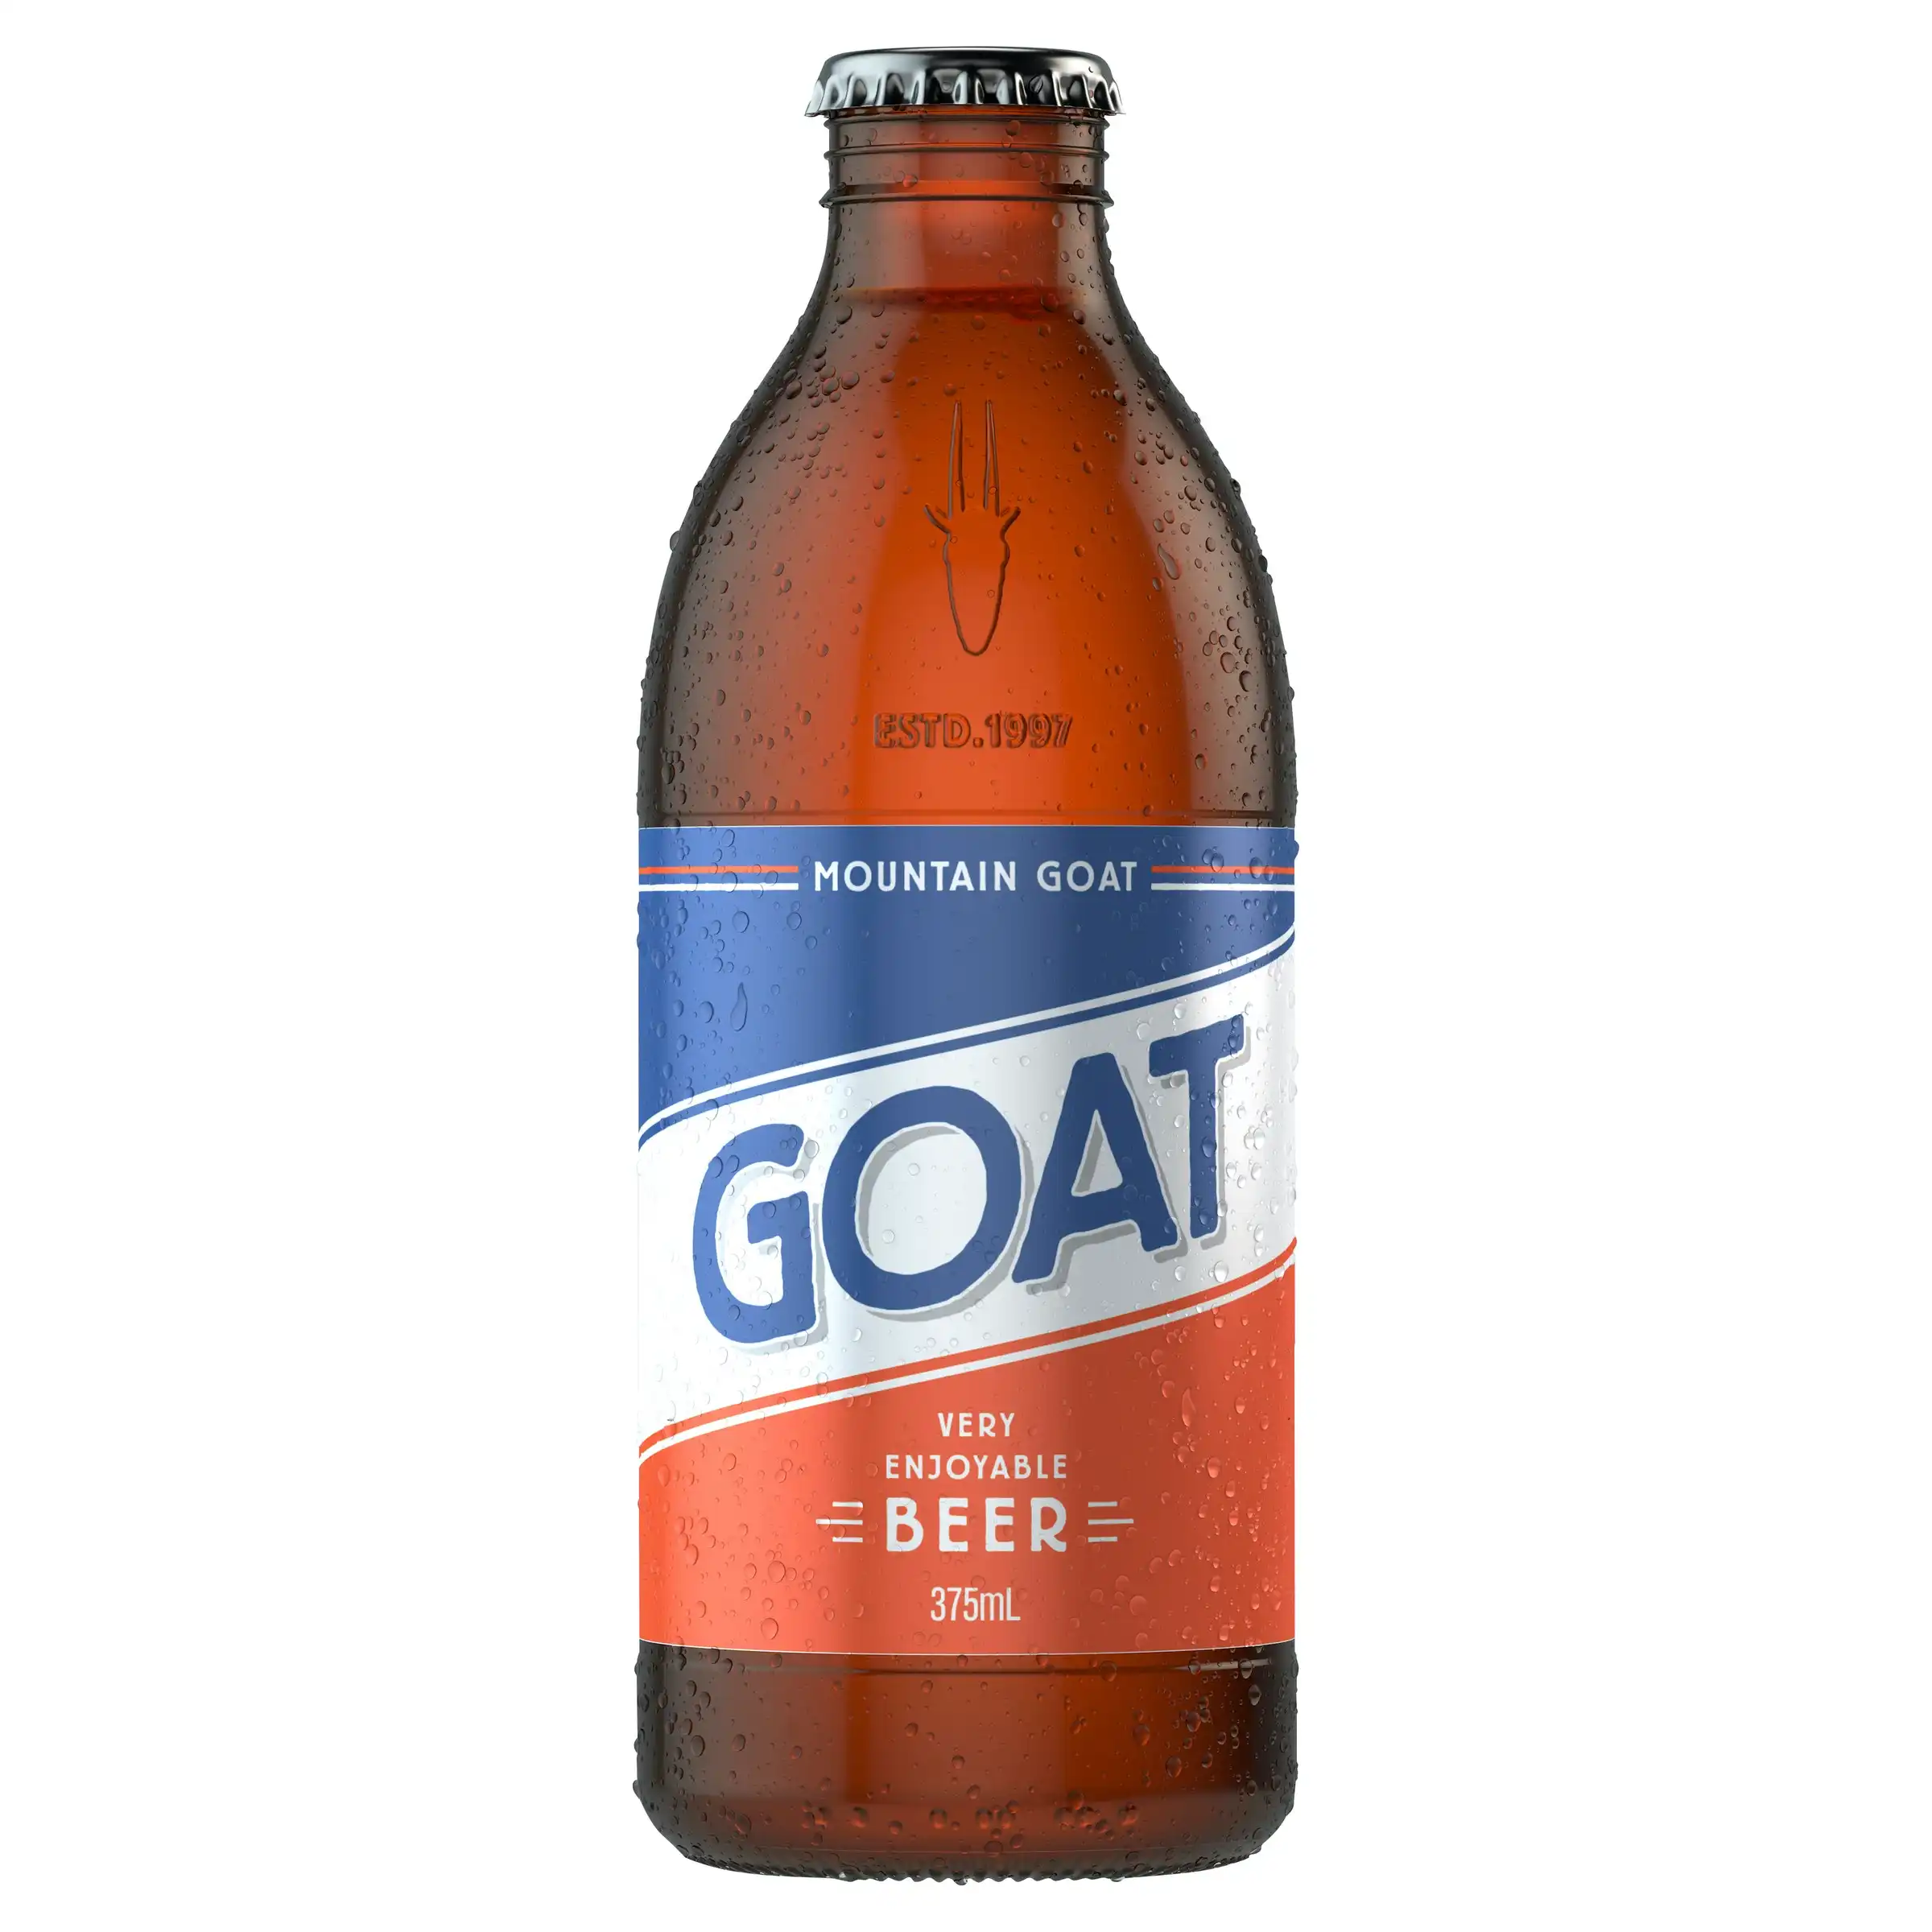 Mountain Goat 'Goat' Beer 24 x 375mL Bottles